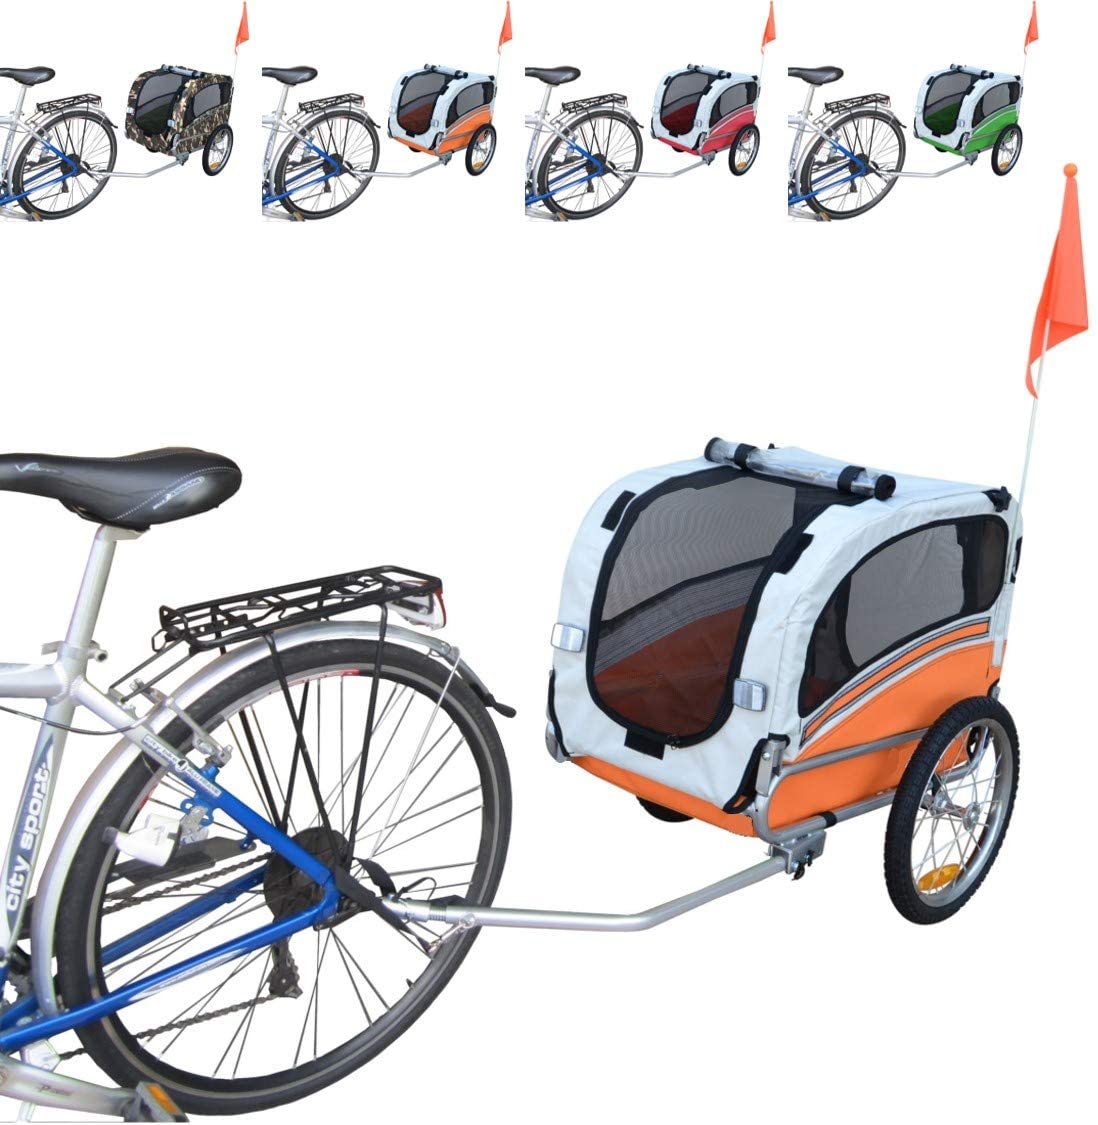  Papilioshop Snoopy Remolque de Bicicleta para el Transporte de Perros y Animales 